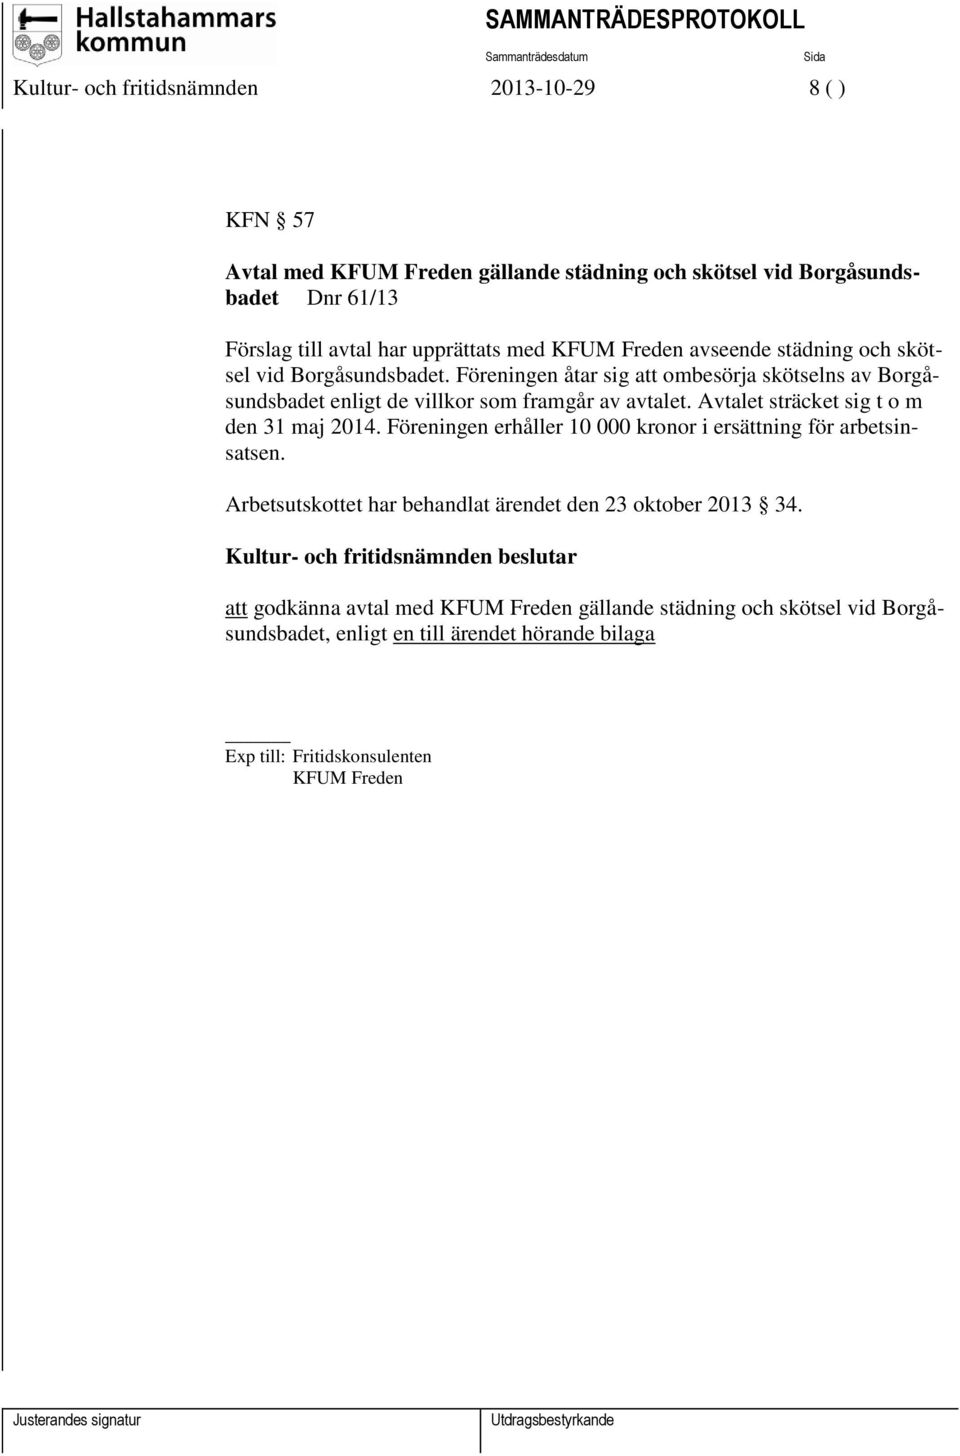 Föreningen åtar sig att ombesörja skötselns av Borgåsundsbadet enligt de villkor som framgår av avtalet. Avtalet sträcket sig t o m den 31 maj 2014.